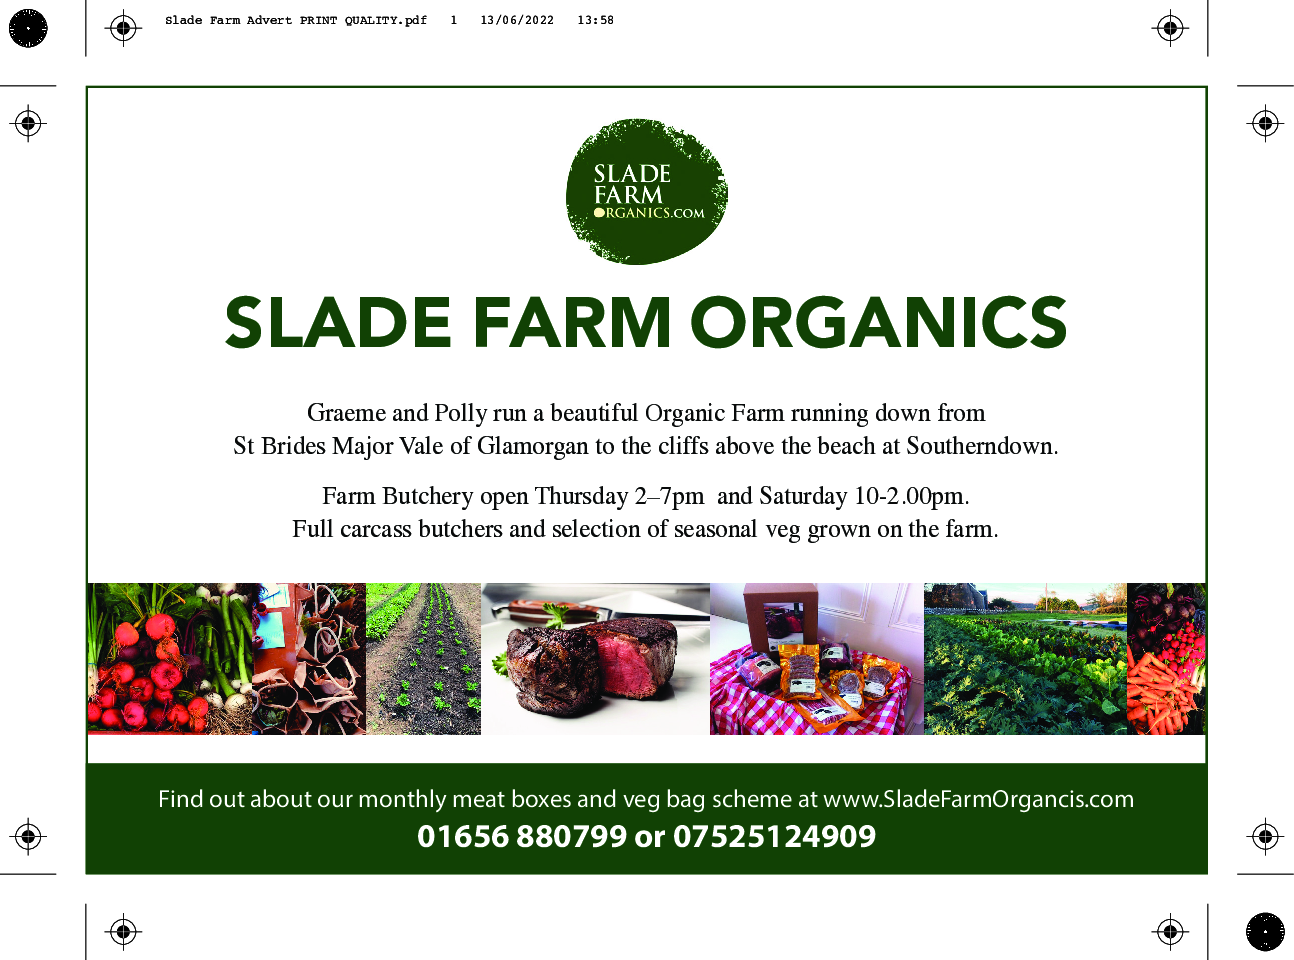 Slade-Farm-Advert-PRINT-QUALITY_0